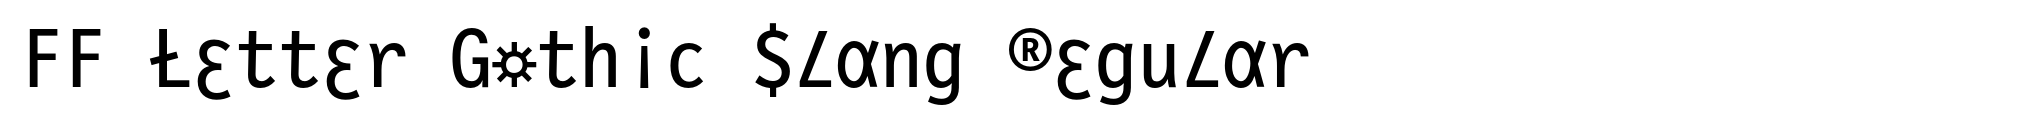 FF Letter Gothic Slang Regular image